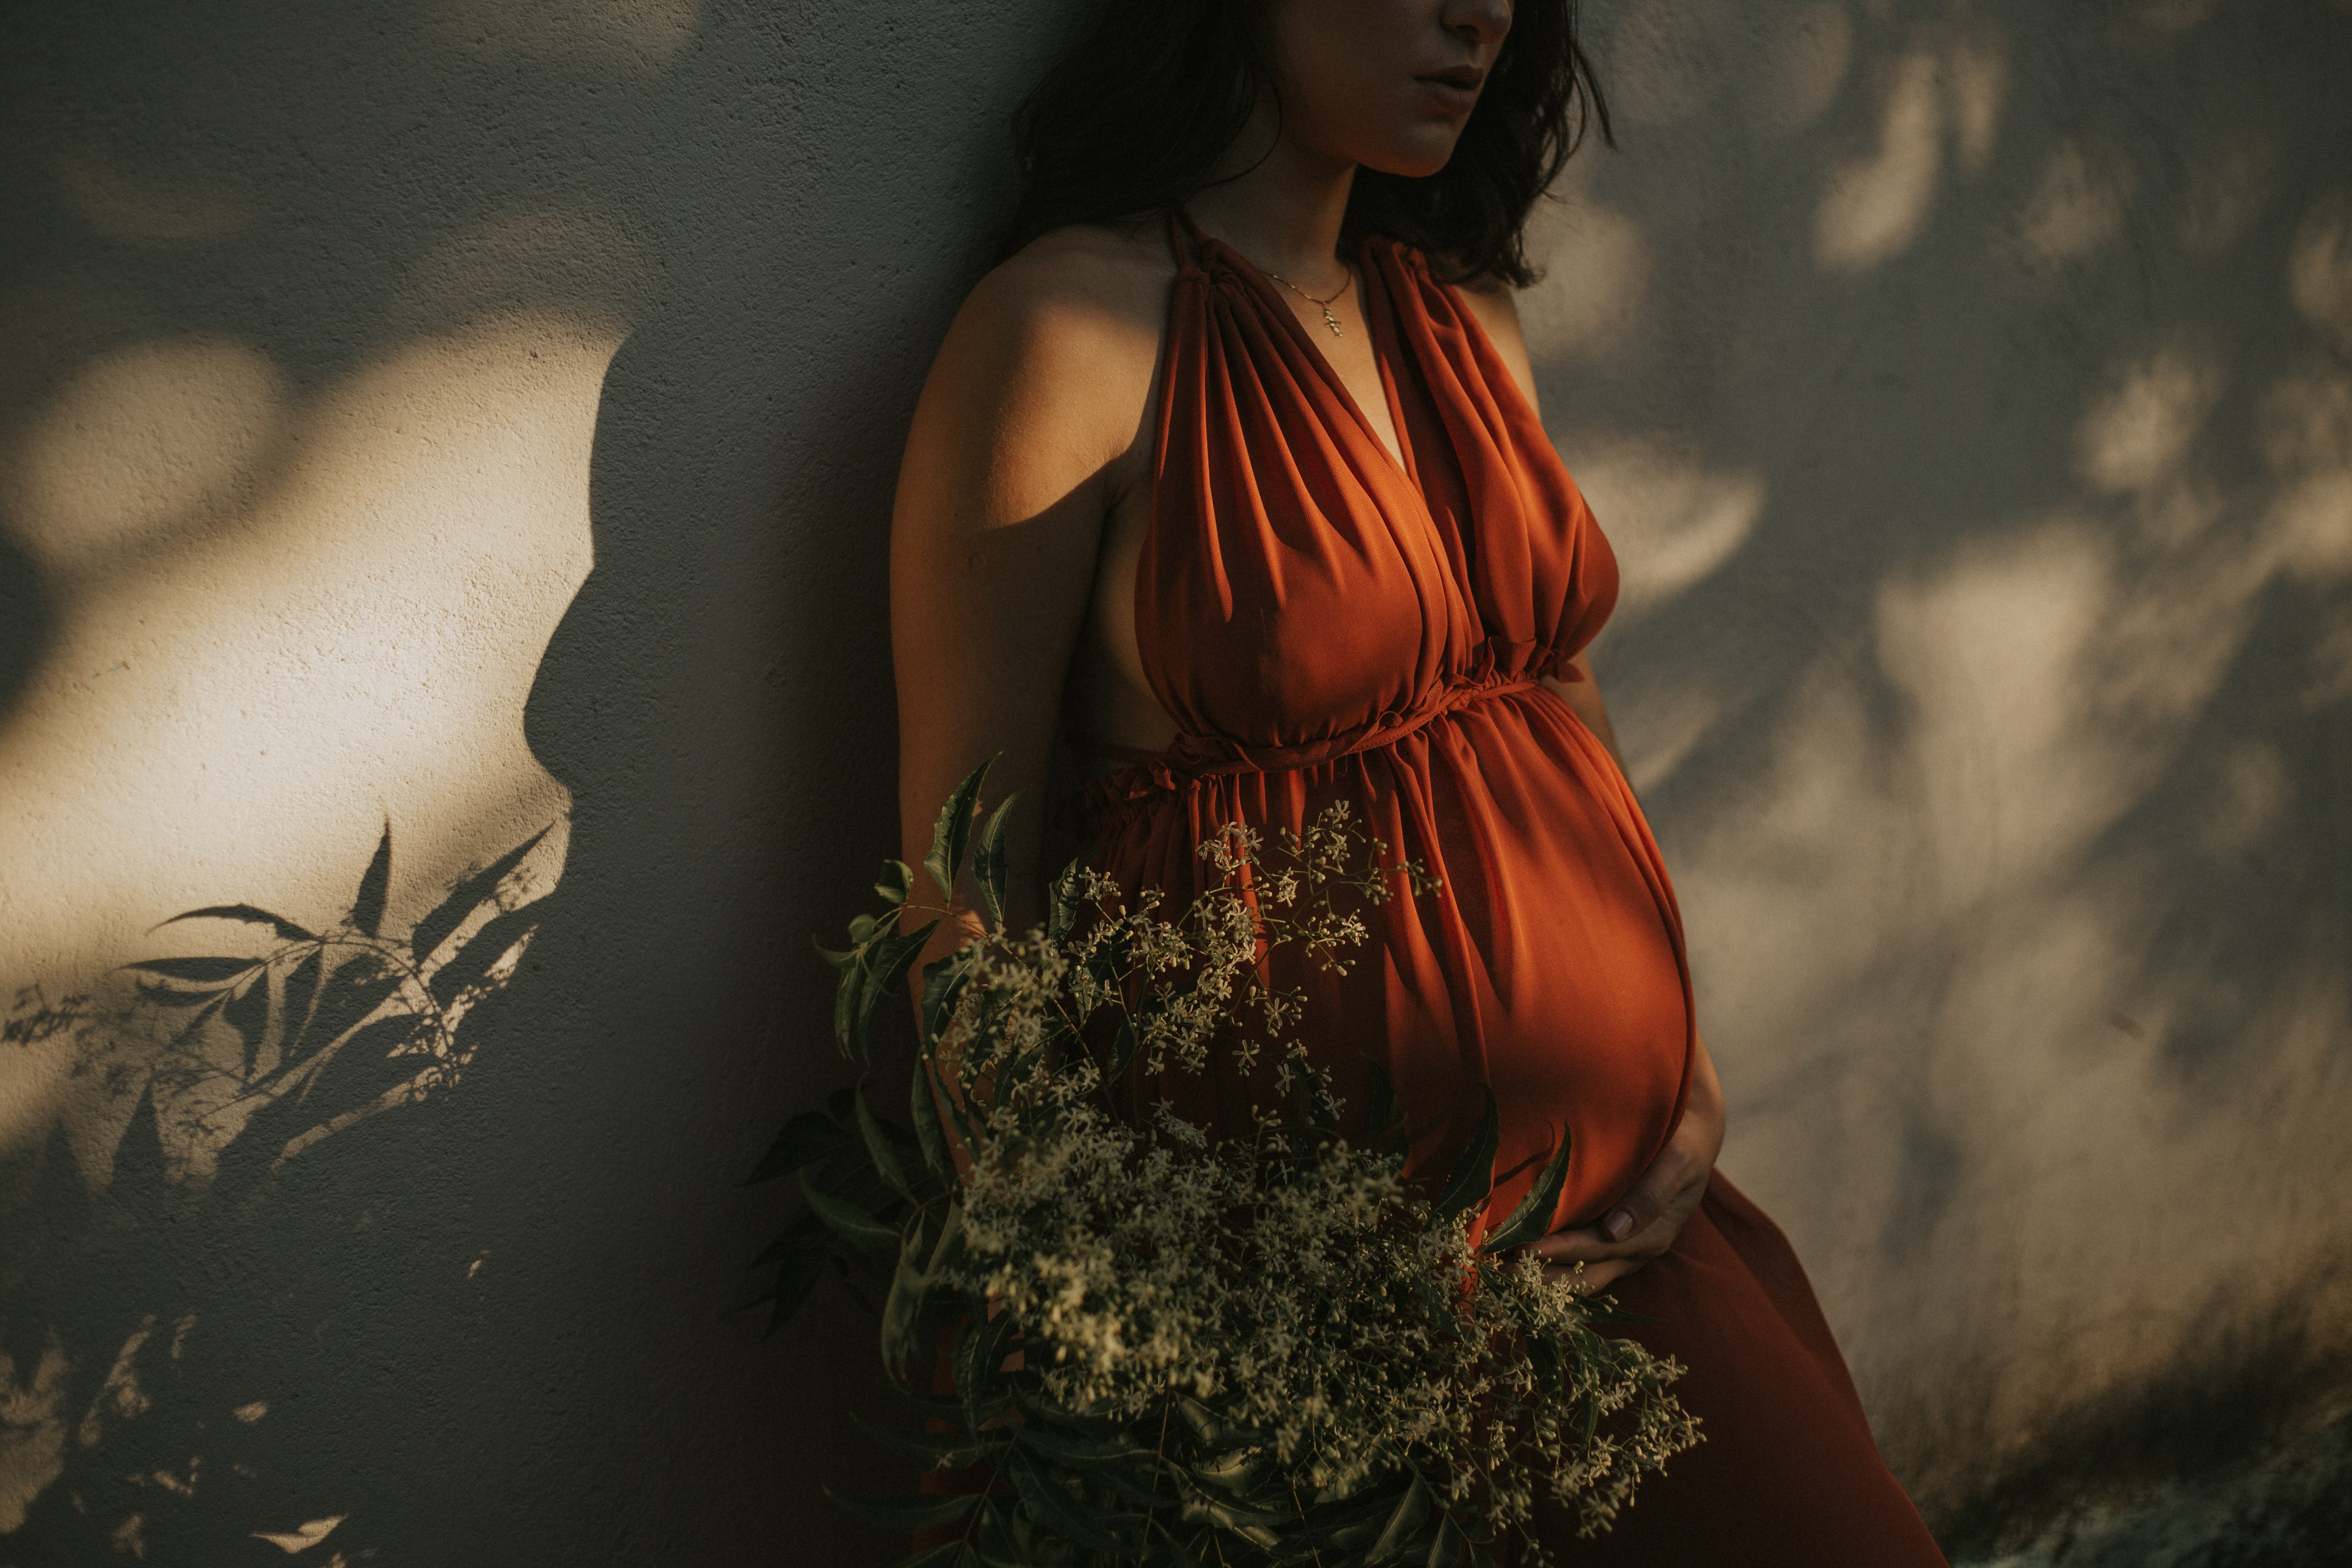 A pregnant woman | Source: Pexels